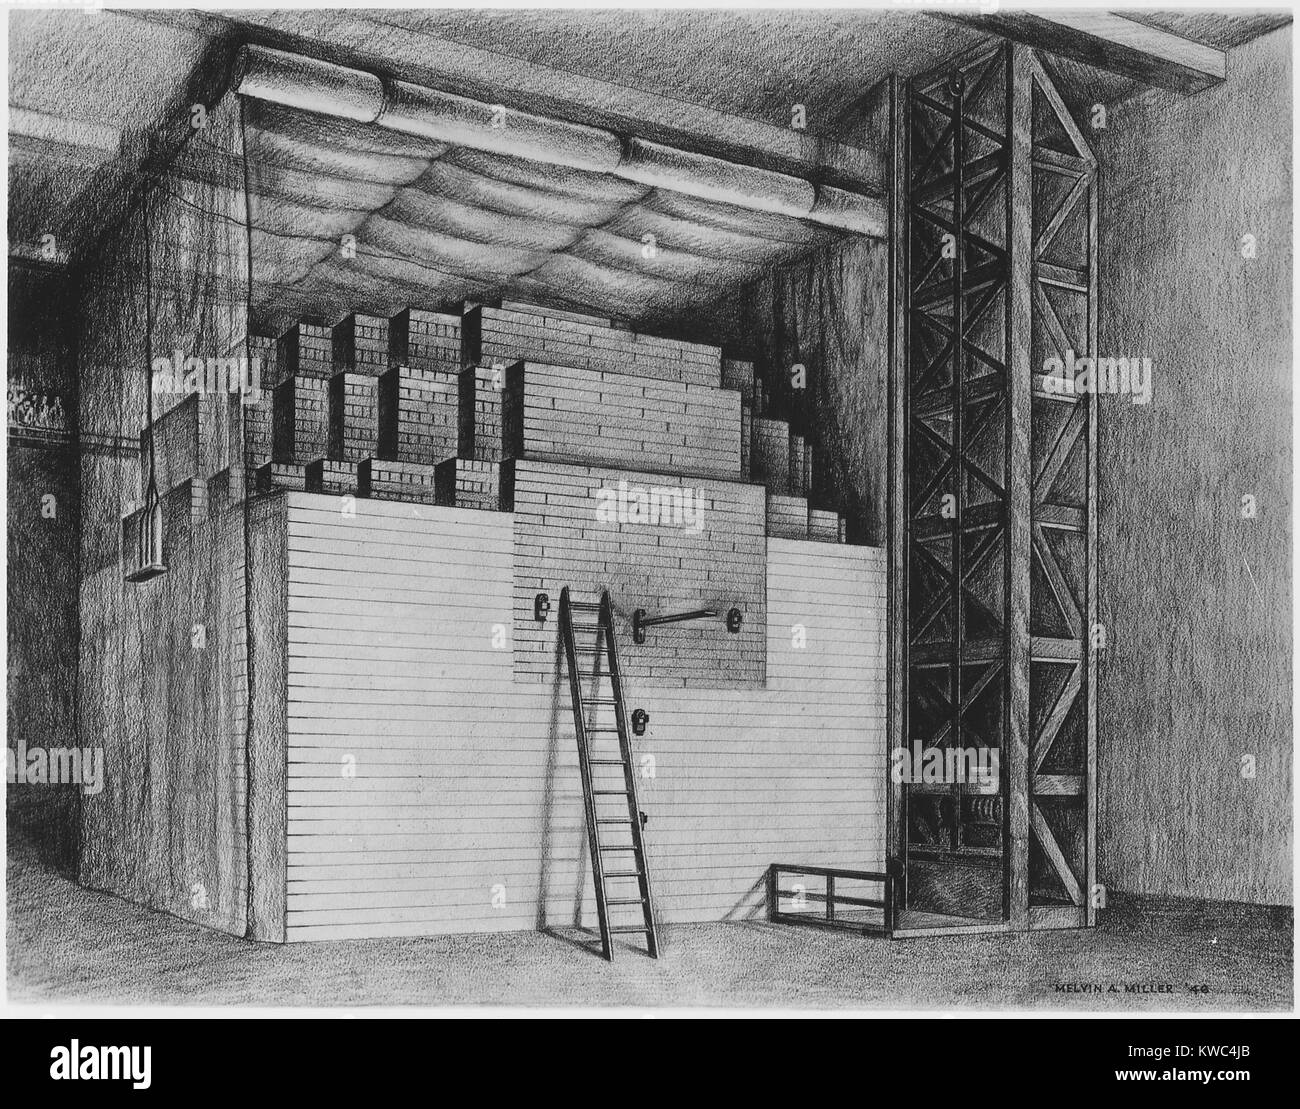 Ersten kernreaktor an der Universität von Chicago erreicht die erste sich selbst erhaltende Kettenreaktion. Dezember 2, 1942. Chicago Pile-1 (CP-1) wurde unter der Leitung der Physiker Enrico Fermi gebaut, in Zusammenarbeit mit der Leo Szilard. Im Jahr 1943 war es zerlegt und zusammengesetzt an der Palos Park Einheit des Argonne National Laboratory. Die Zeichnung ist von Melvin Miller, A., des Argonne National Laboratory. (BSLOC 2015 2 23) Stockfoto